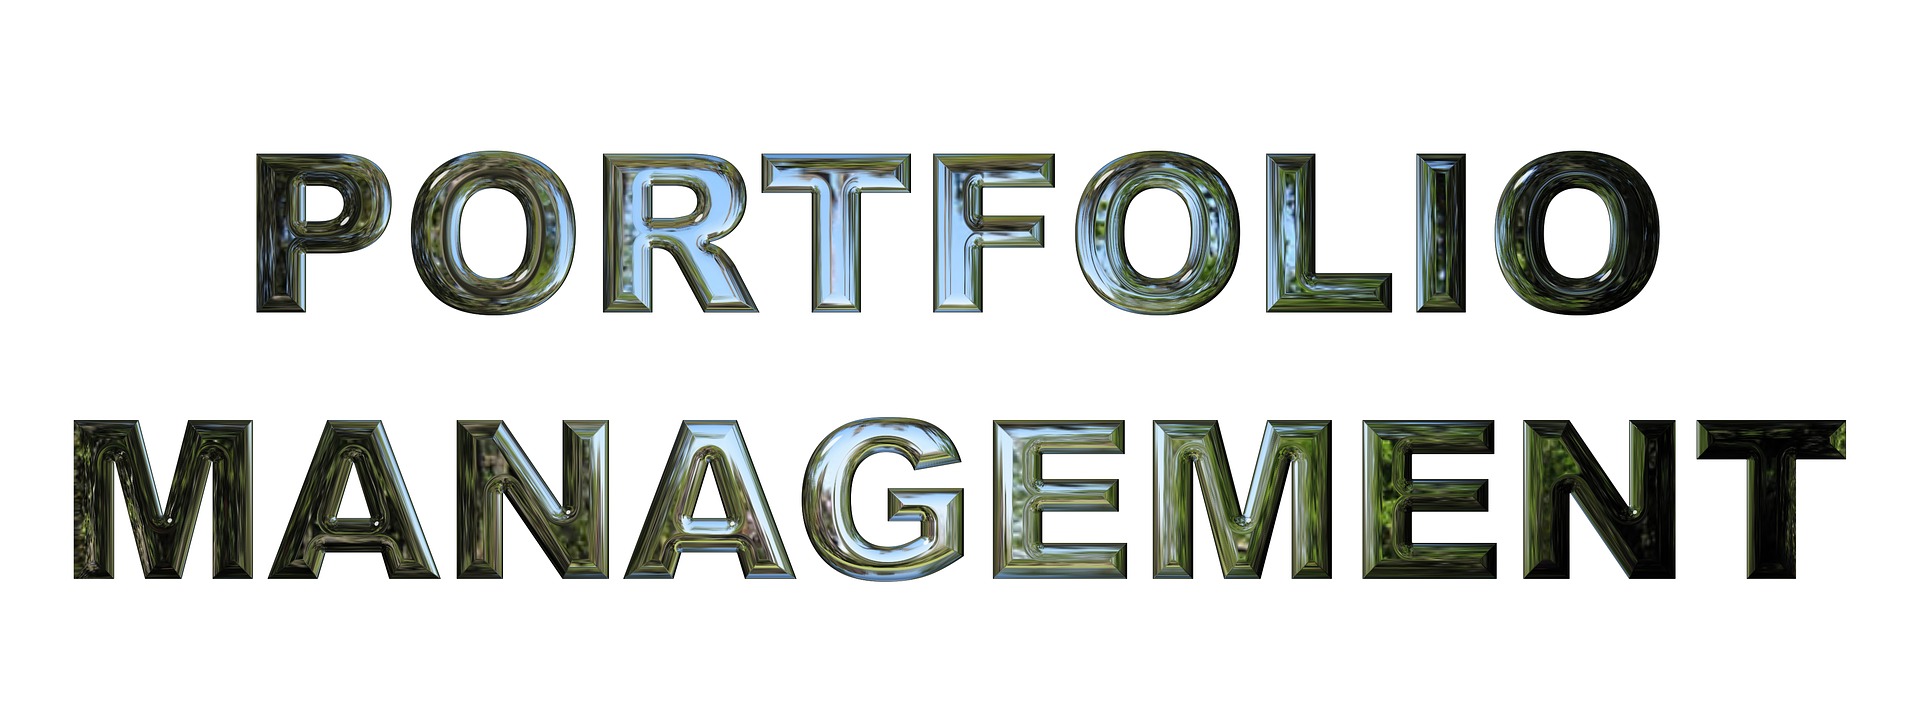 portfolio-management-2428013_1920